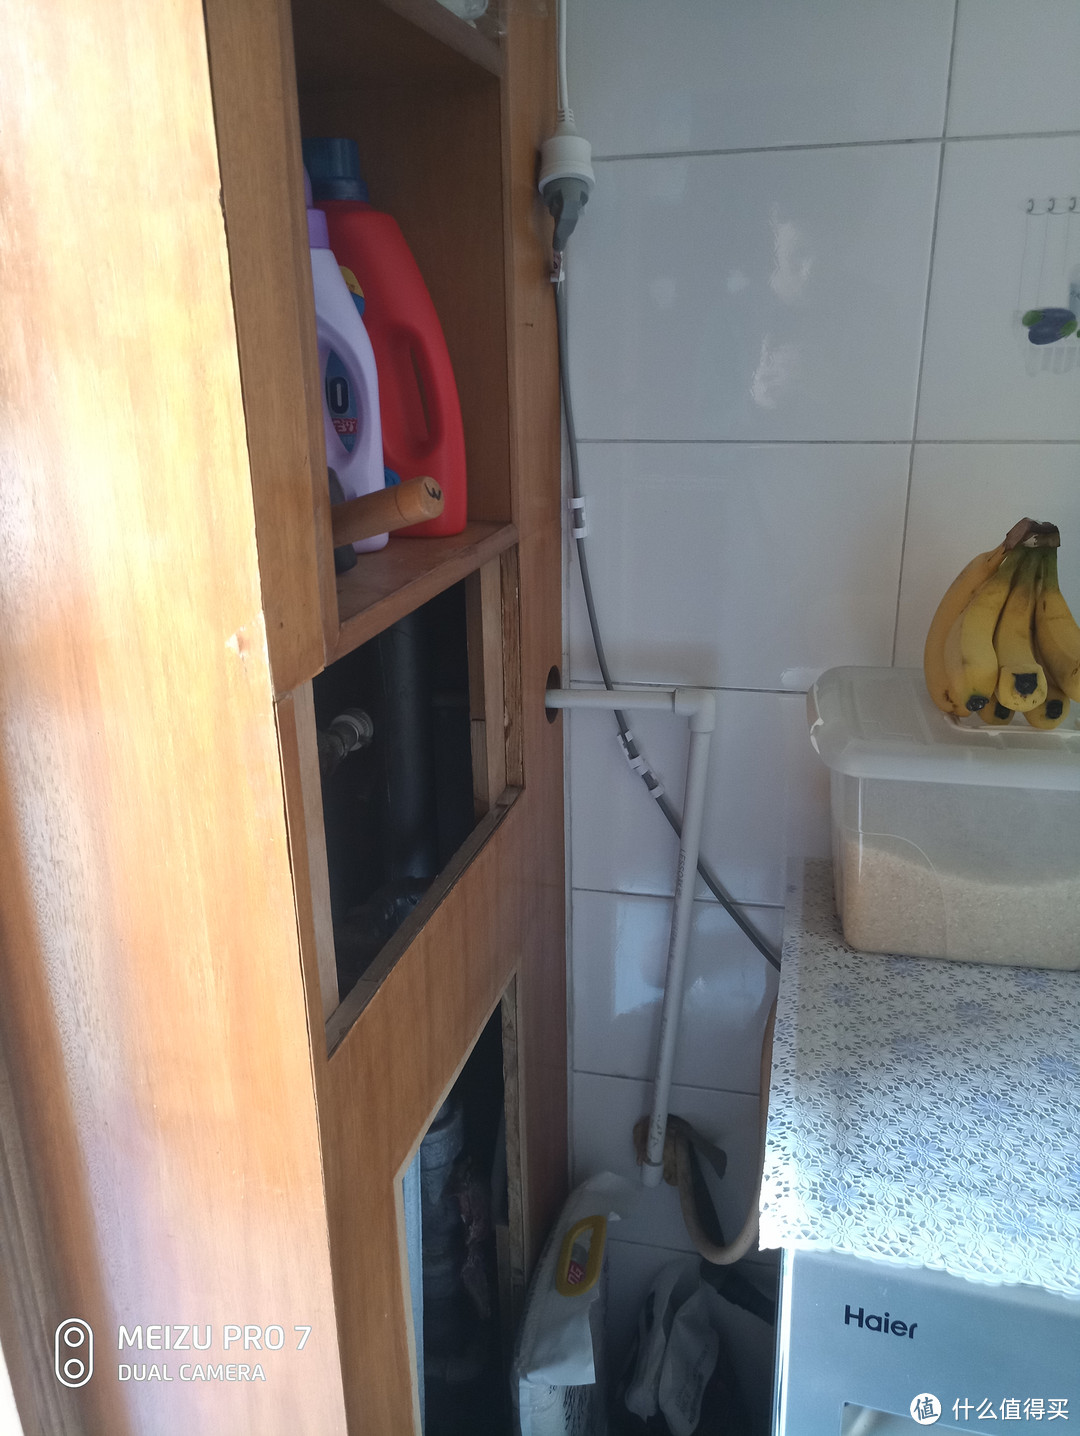 由于这边没有电源插口，所以某宝买了5米的延长线飞线过来给洗衣机供电